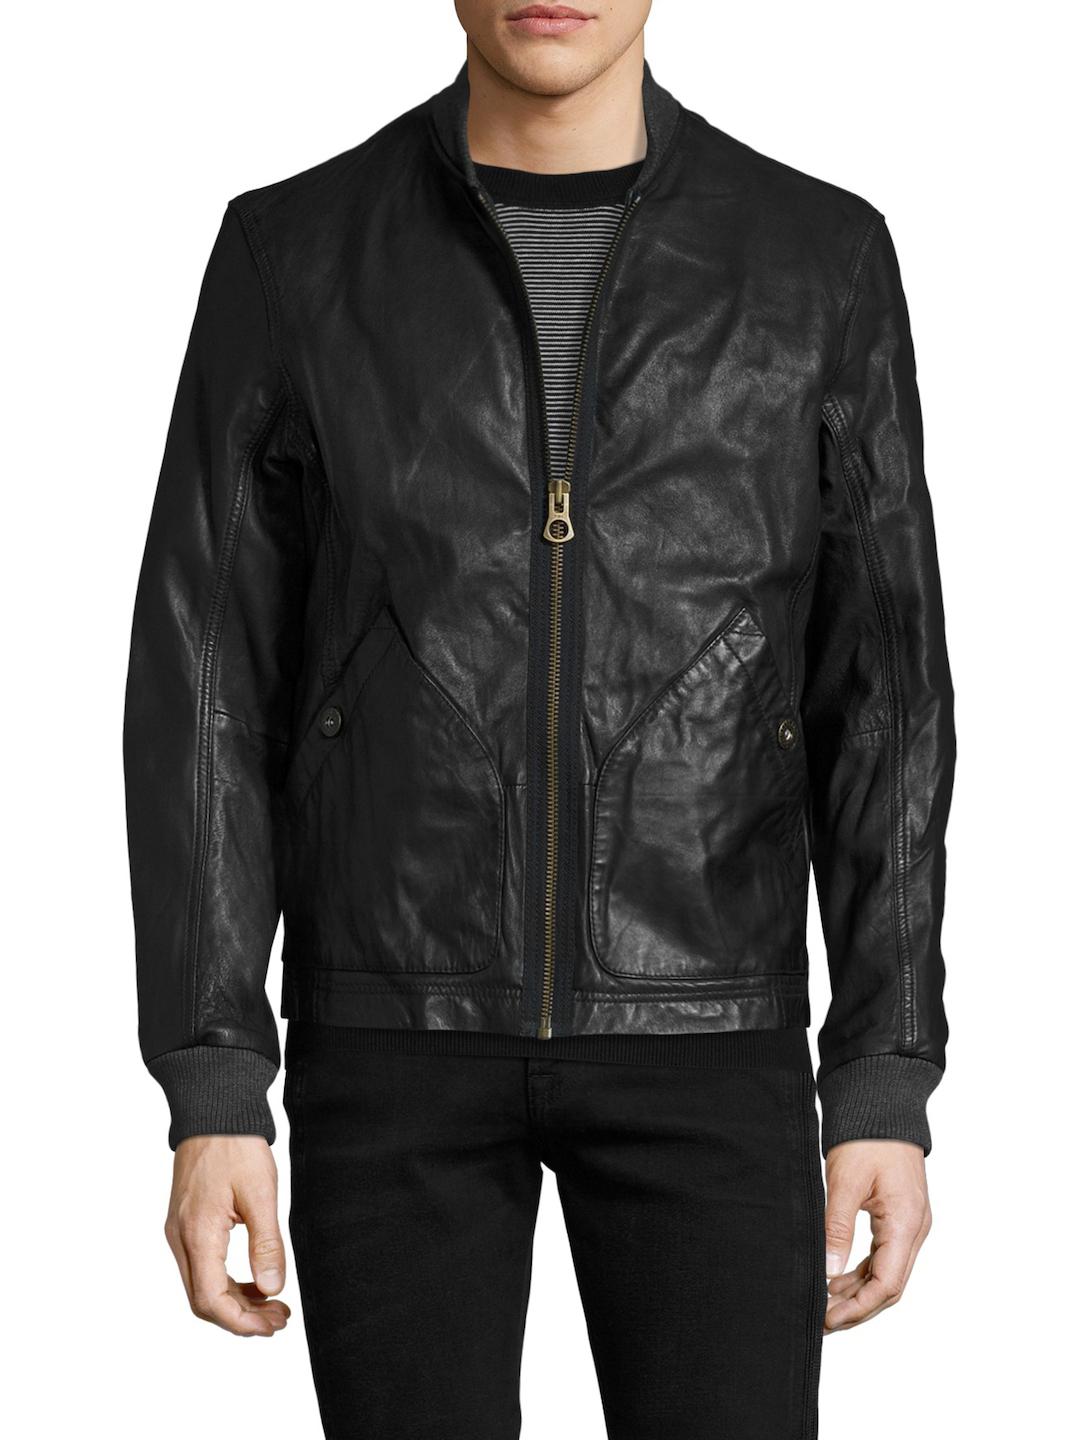 Timberland Mount Webster Leather Bomber Jacket in Black for Men - Lyst